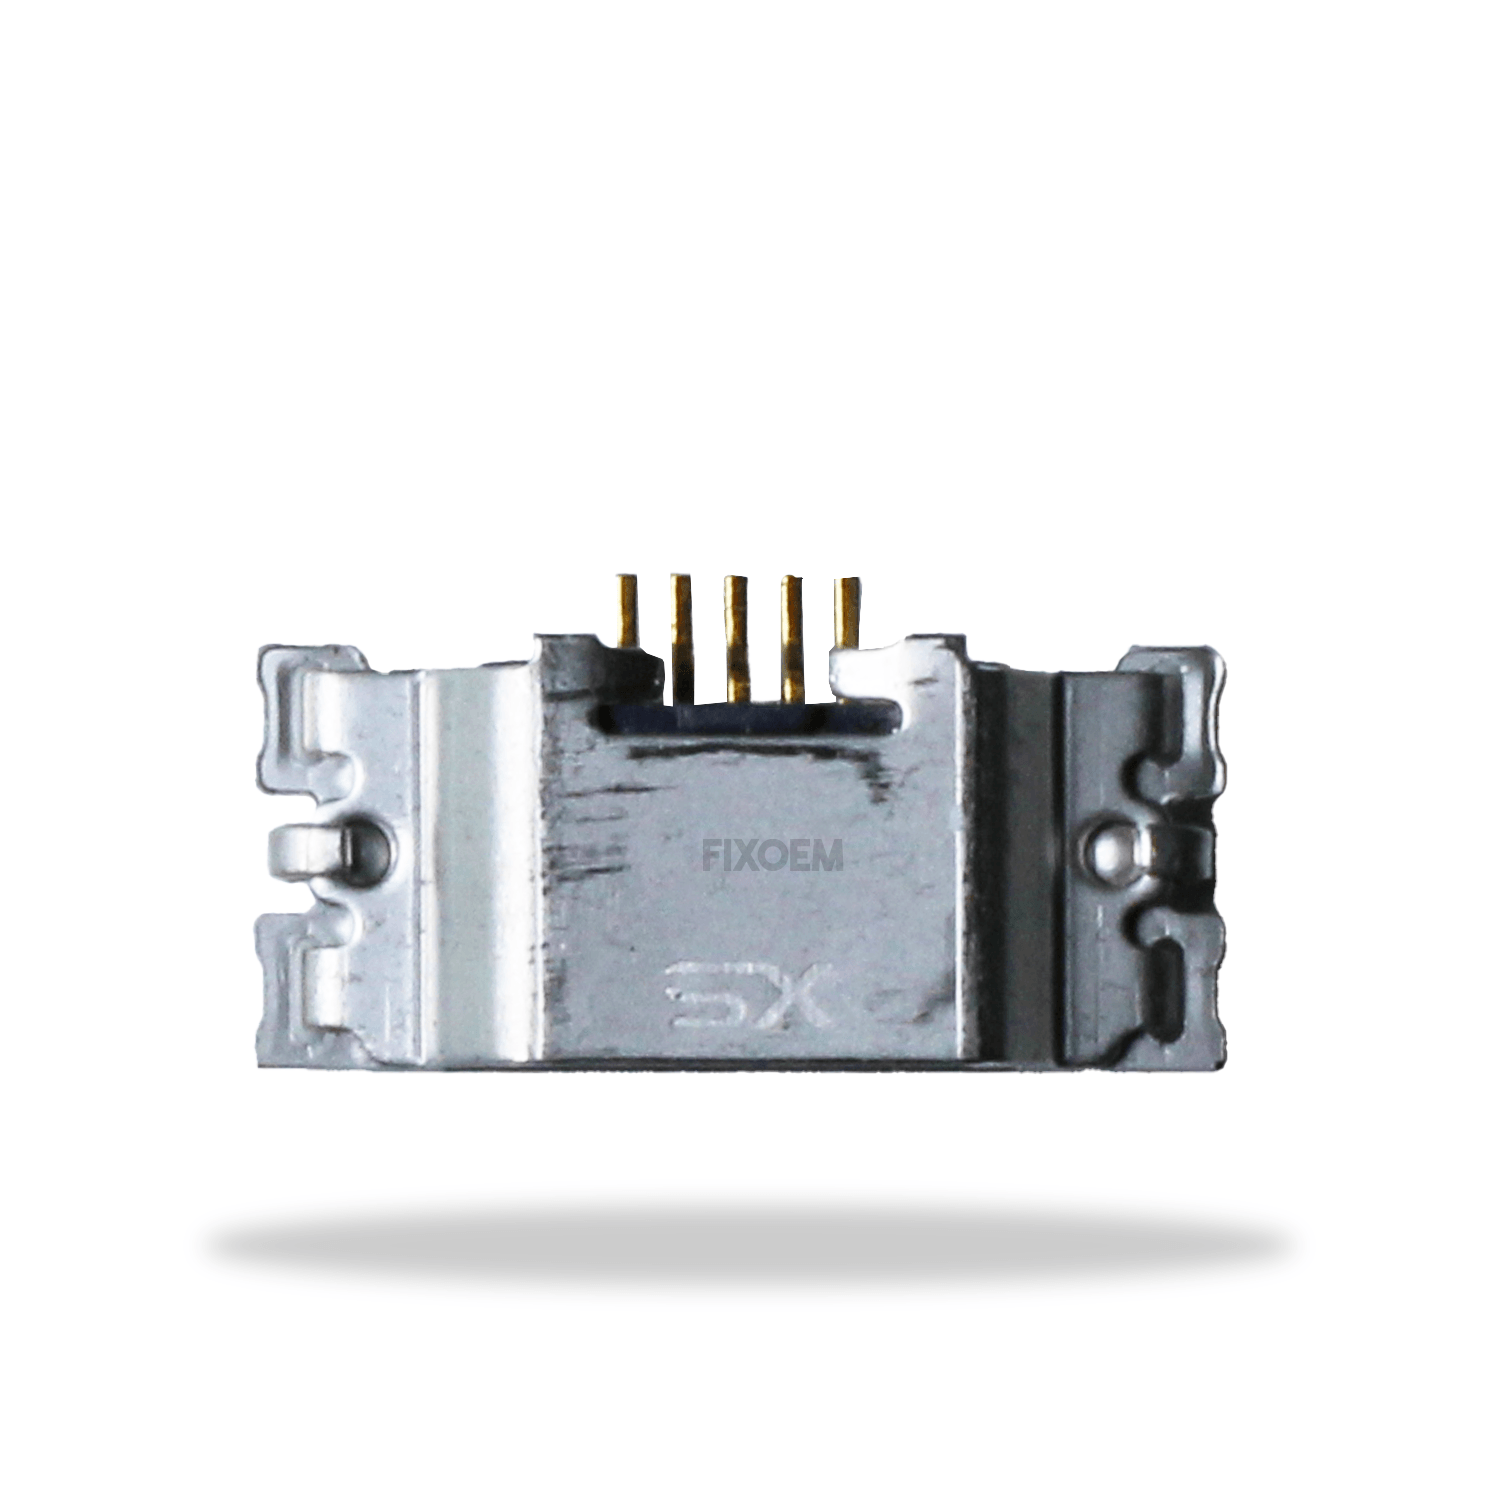 Pin Carga Moto G5 Plus Xt1681. a solo $ 5.00 Refaccion y puestos celulares, refurbish y microelectronica.- FixOEM